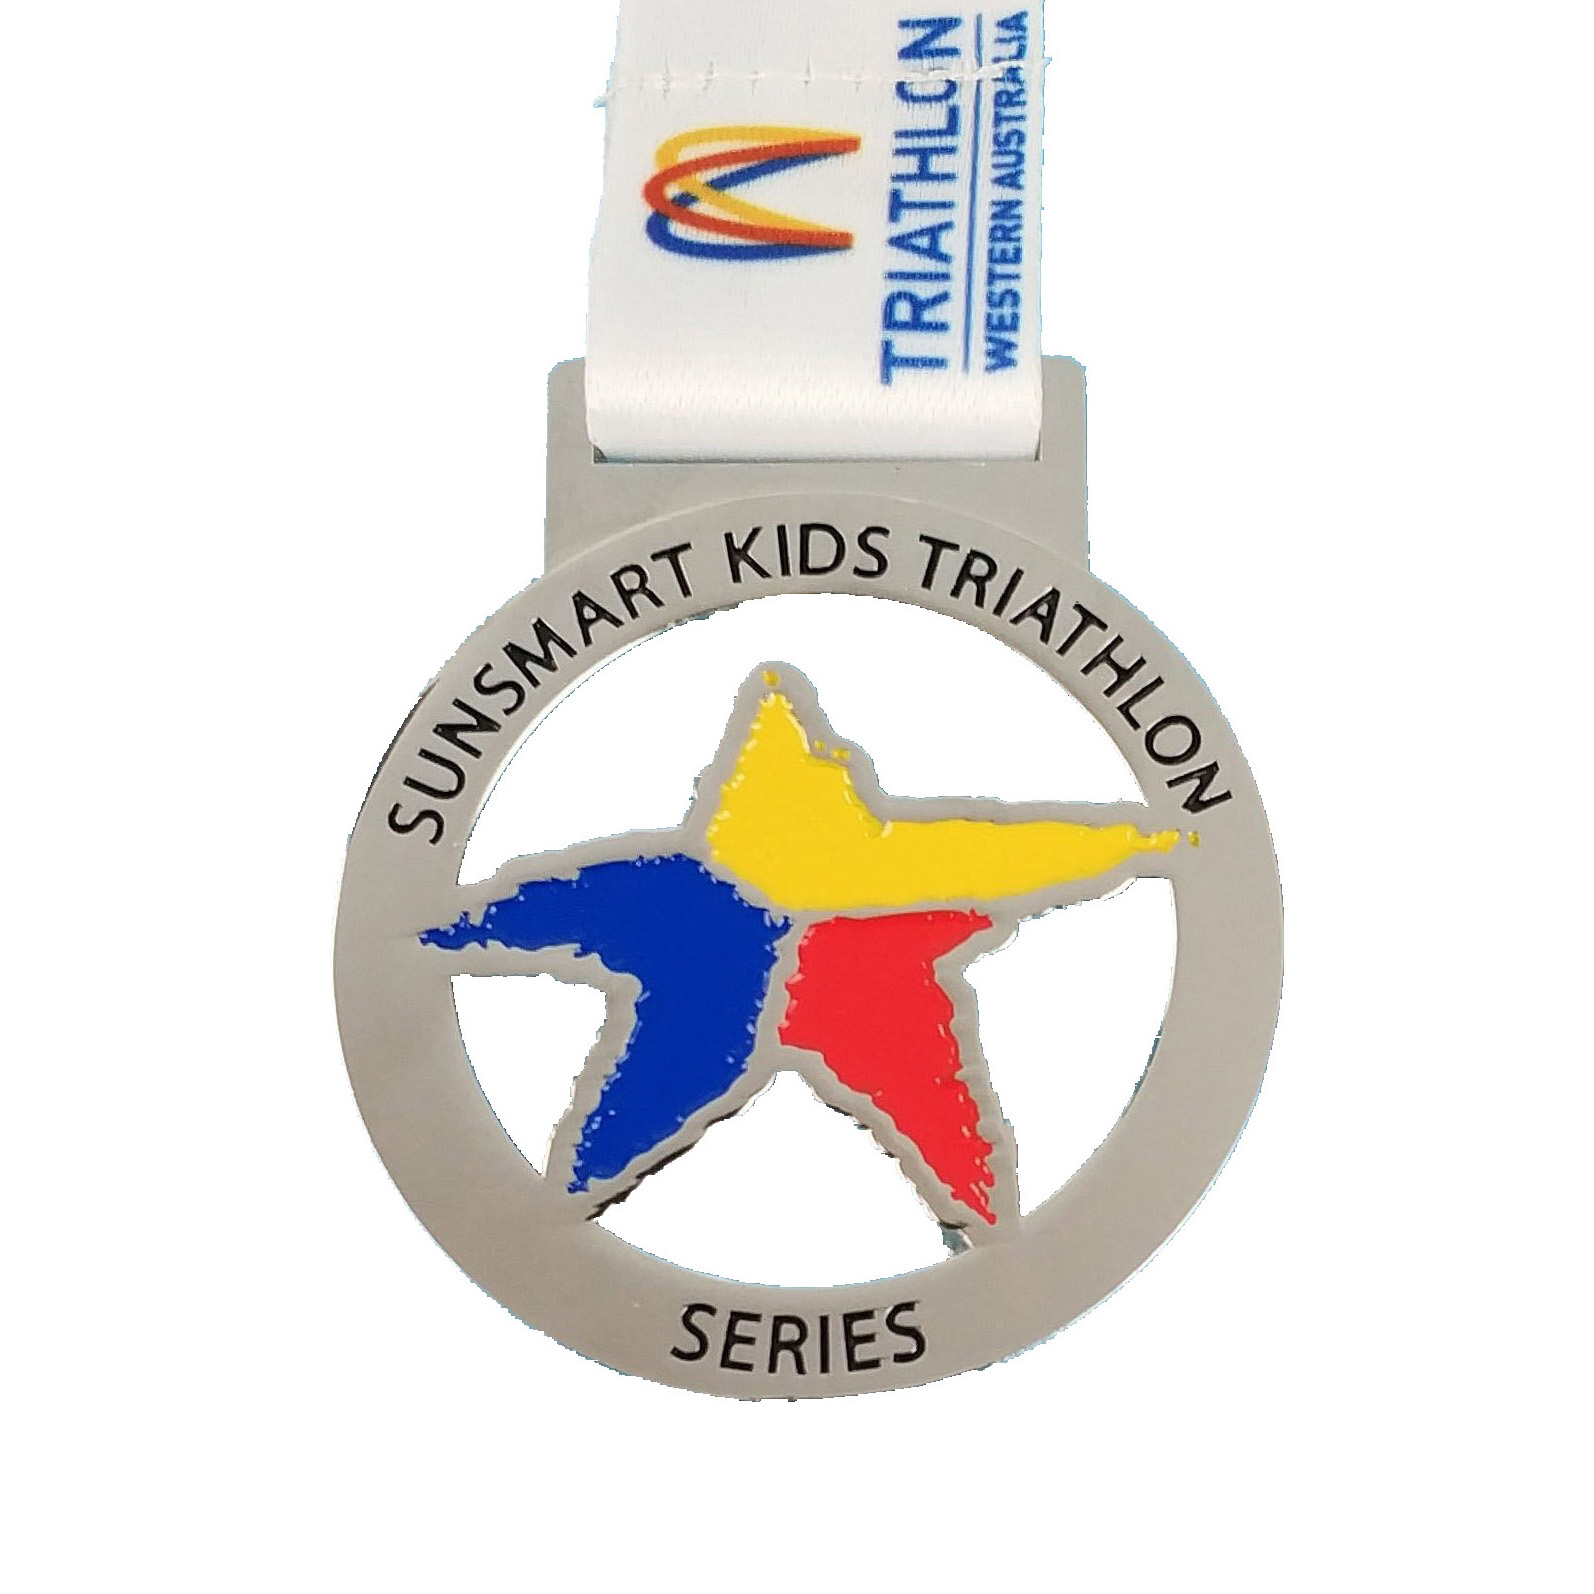 Series medalje foar Kids Triathlon